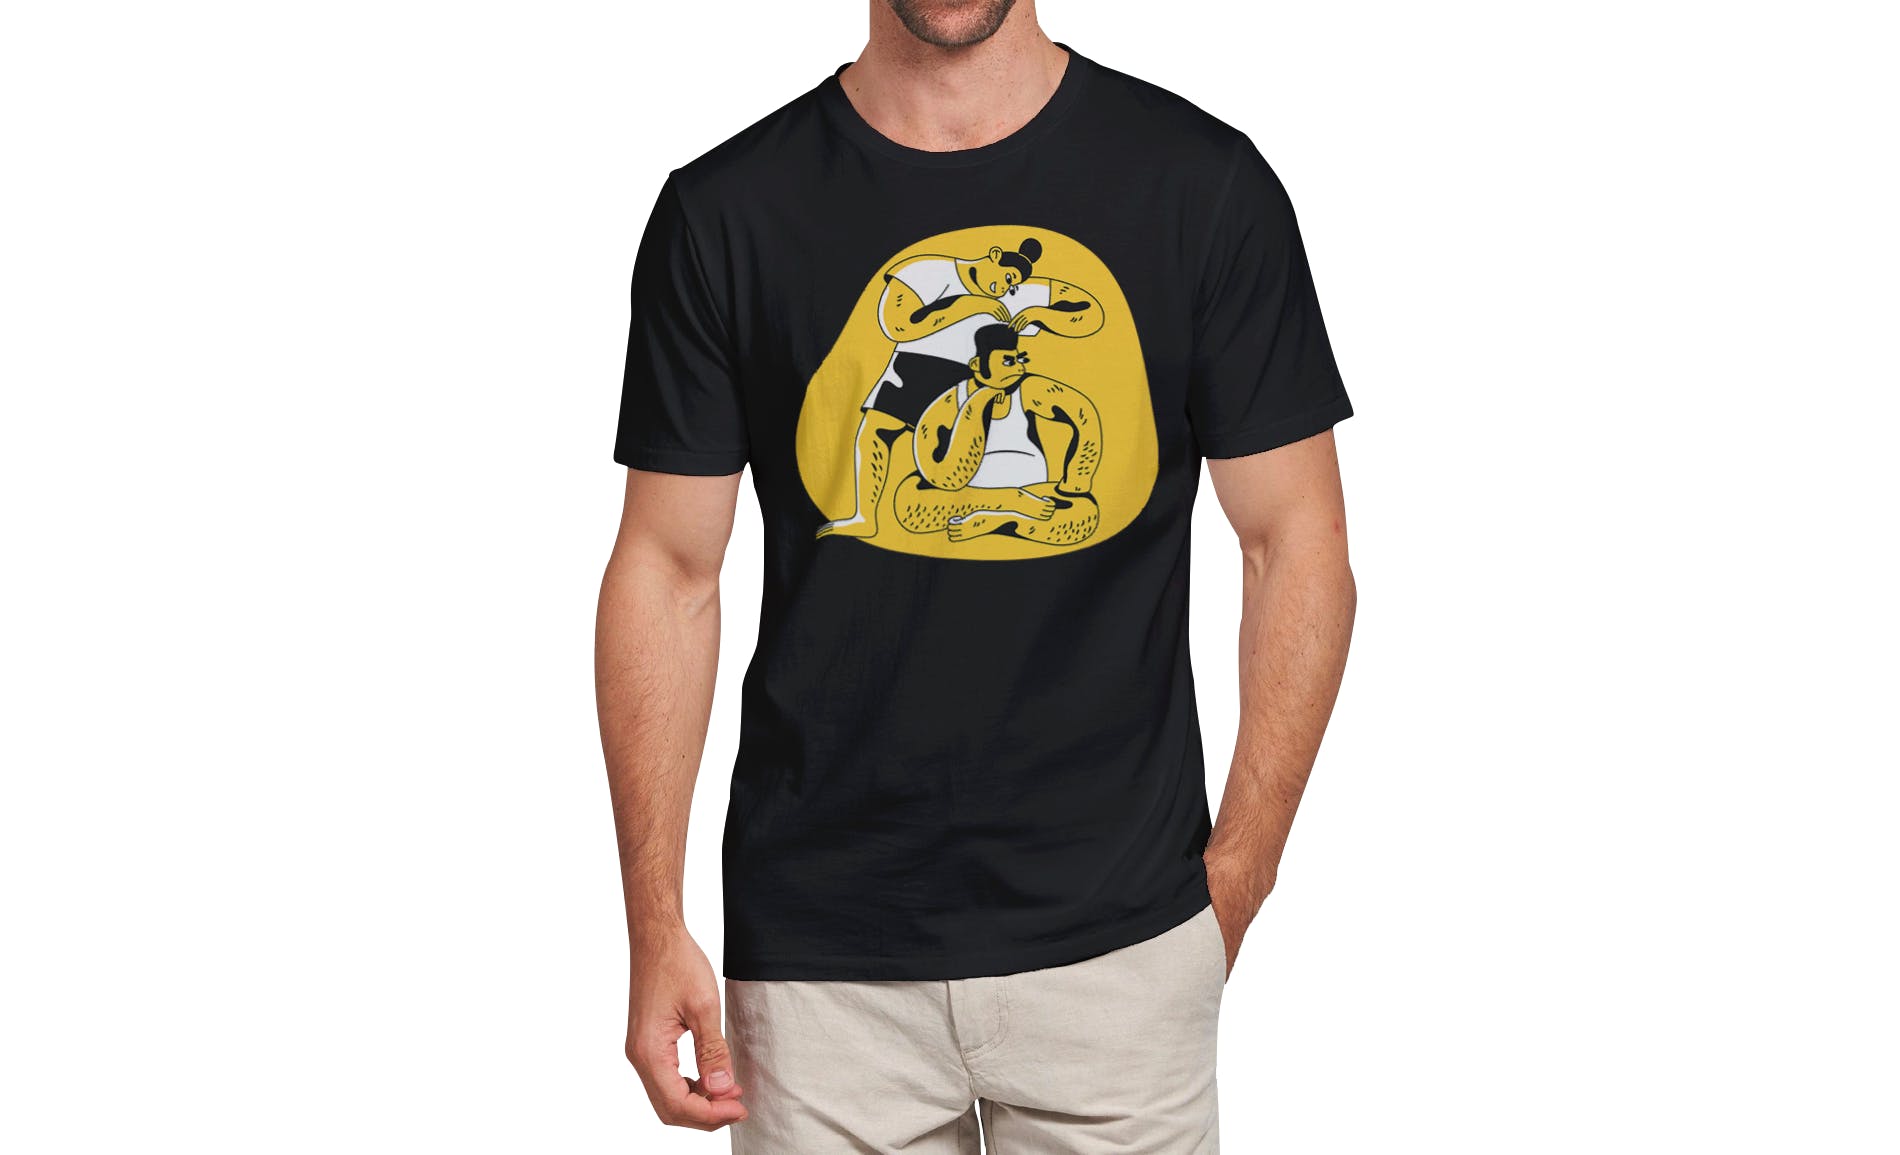 男士T恤印花设计效果图样机蚂蚁素材精选v03 T-shirt Mockup Vol 03插图(8)